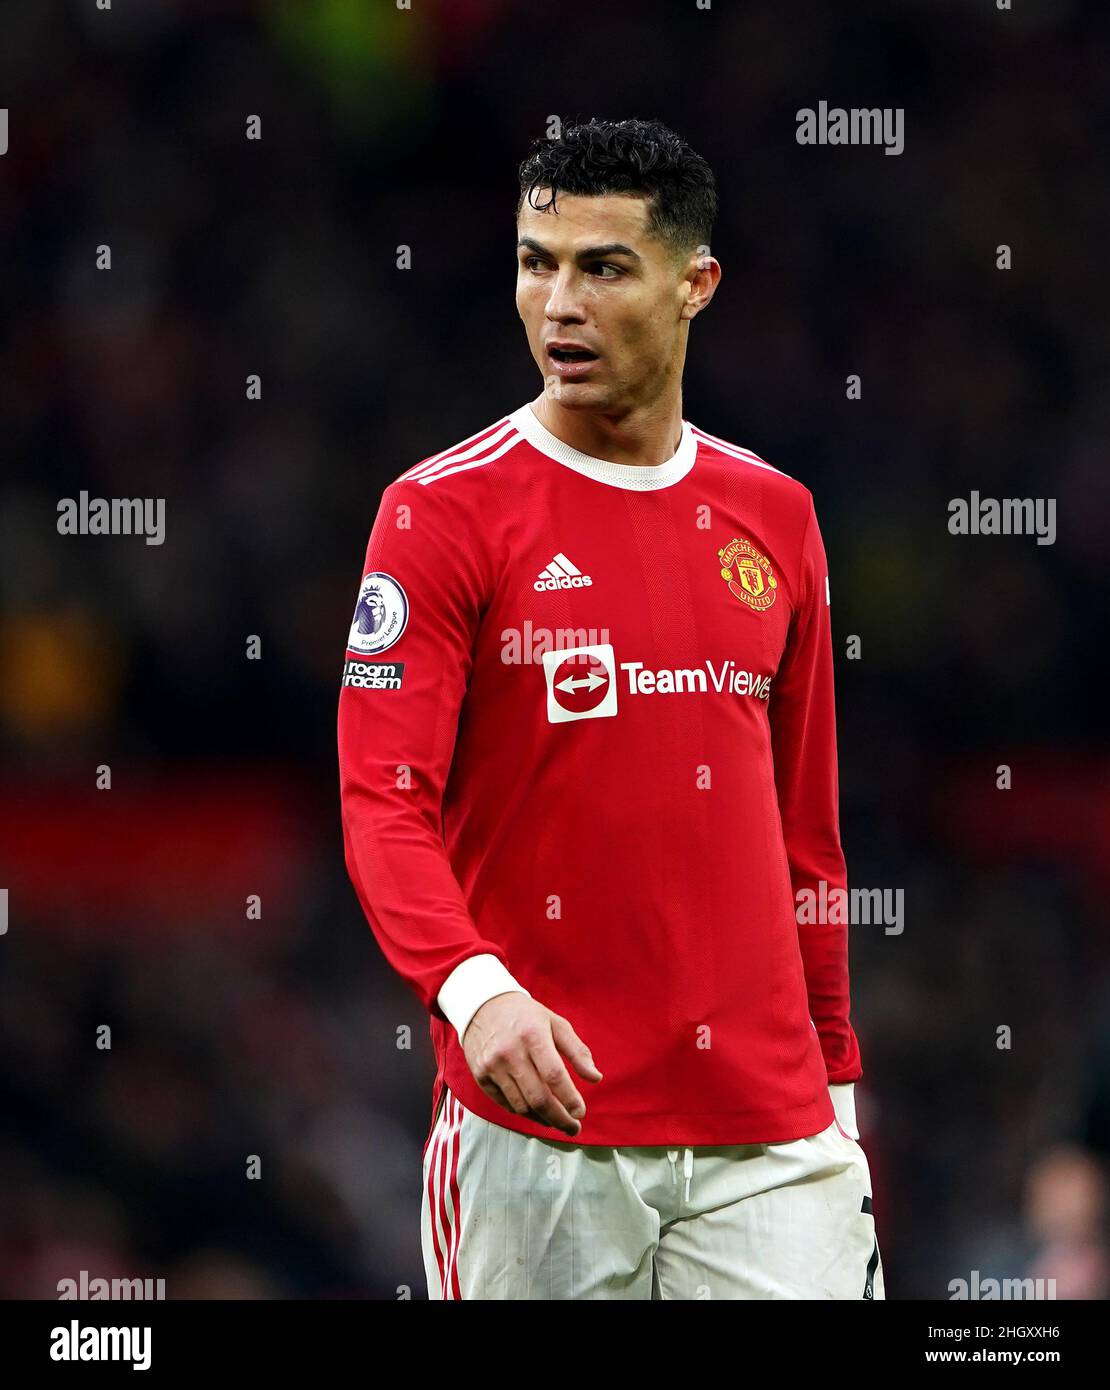 Cristiano Ronaldo de Manchester United lors du match de la Premier League à Old Trafford, Manchester.Date de la photo: Samedi 22 janvier 2022. Banque D'Images